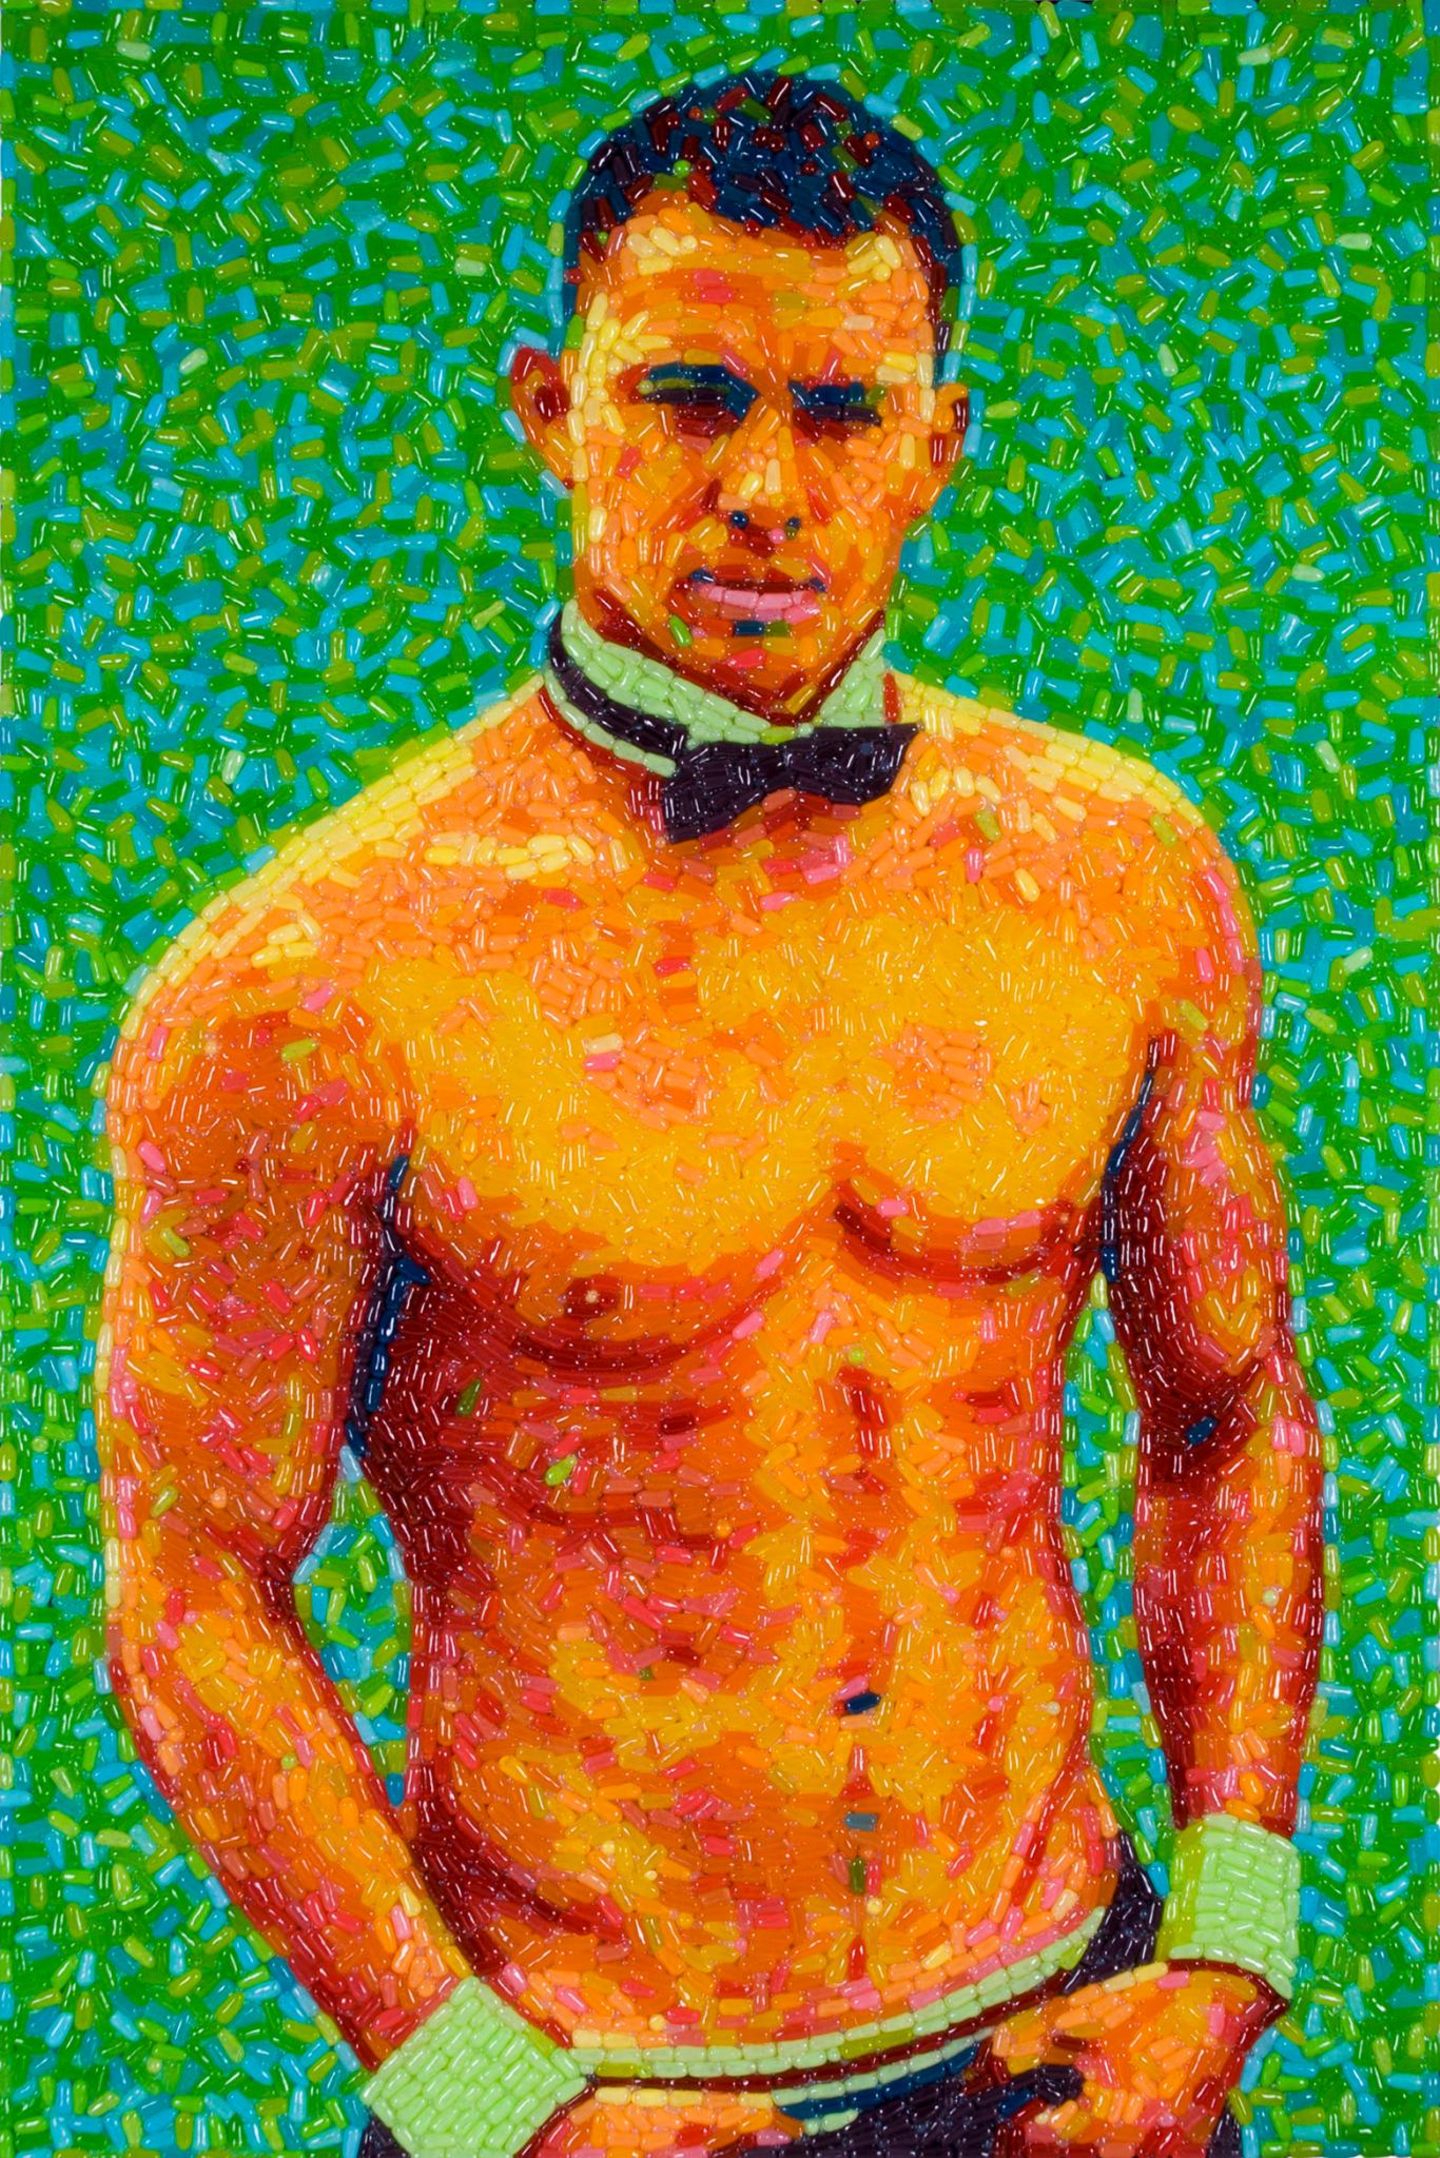 Der Künstler Jason Mecier zaubert ein Bild von Channing Tatum als "Magic Mike" aus Süßigkeiten.